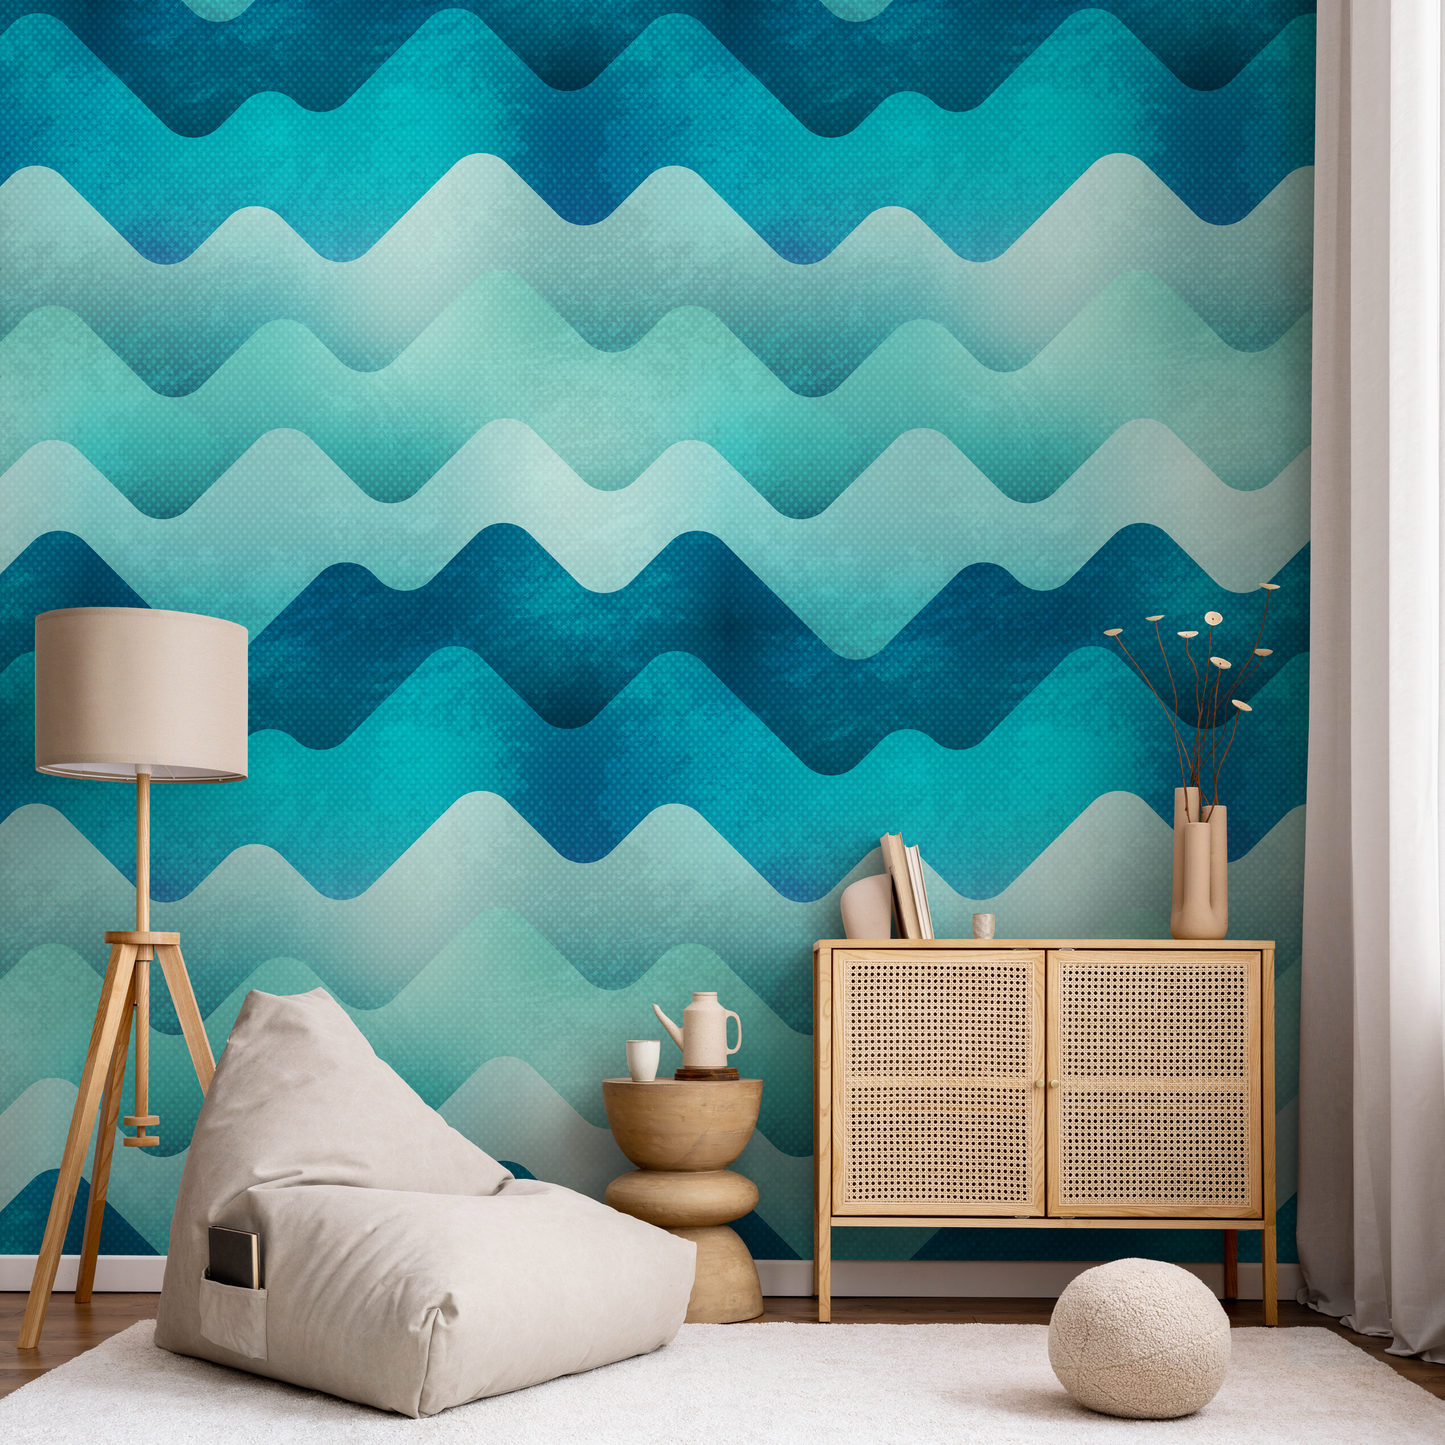 Removable Wallpaper Scandinavian Wallpaper Blue Waves Wallpaper Peel and Stick Wallpaper Wall Paper - A968